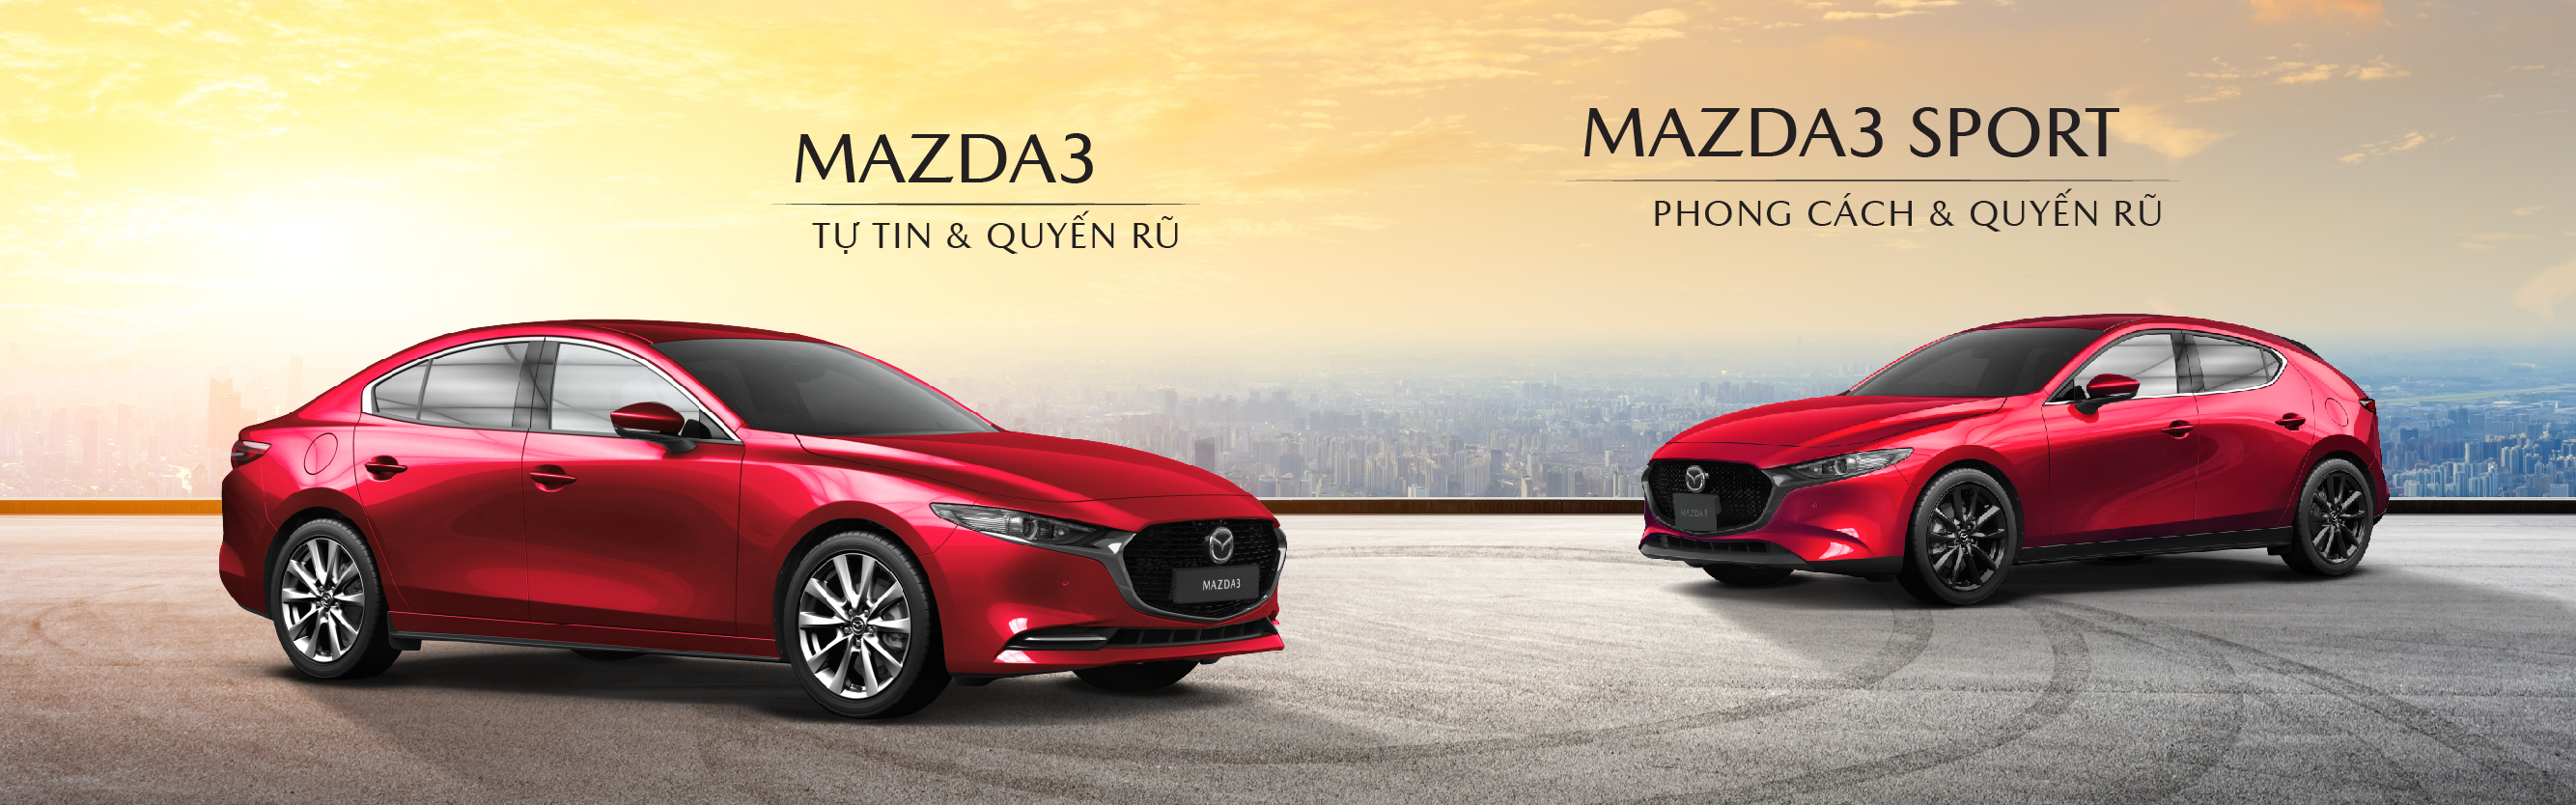 New Mazda CX-5 KHẲNG ĐỊNH ĐẲNG CẤP